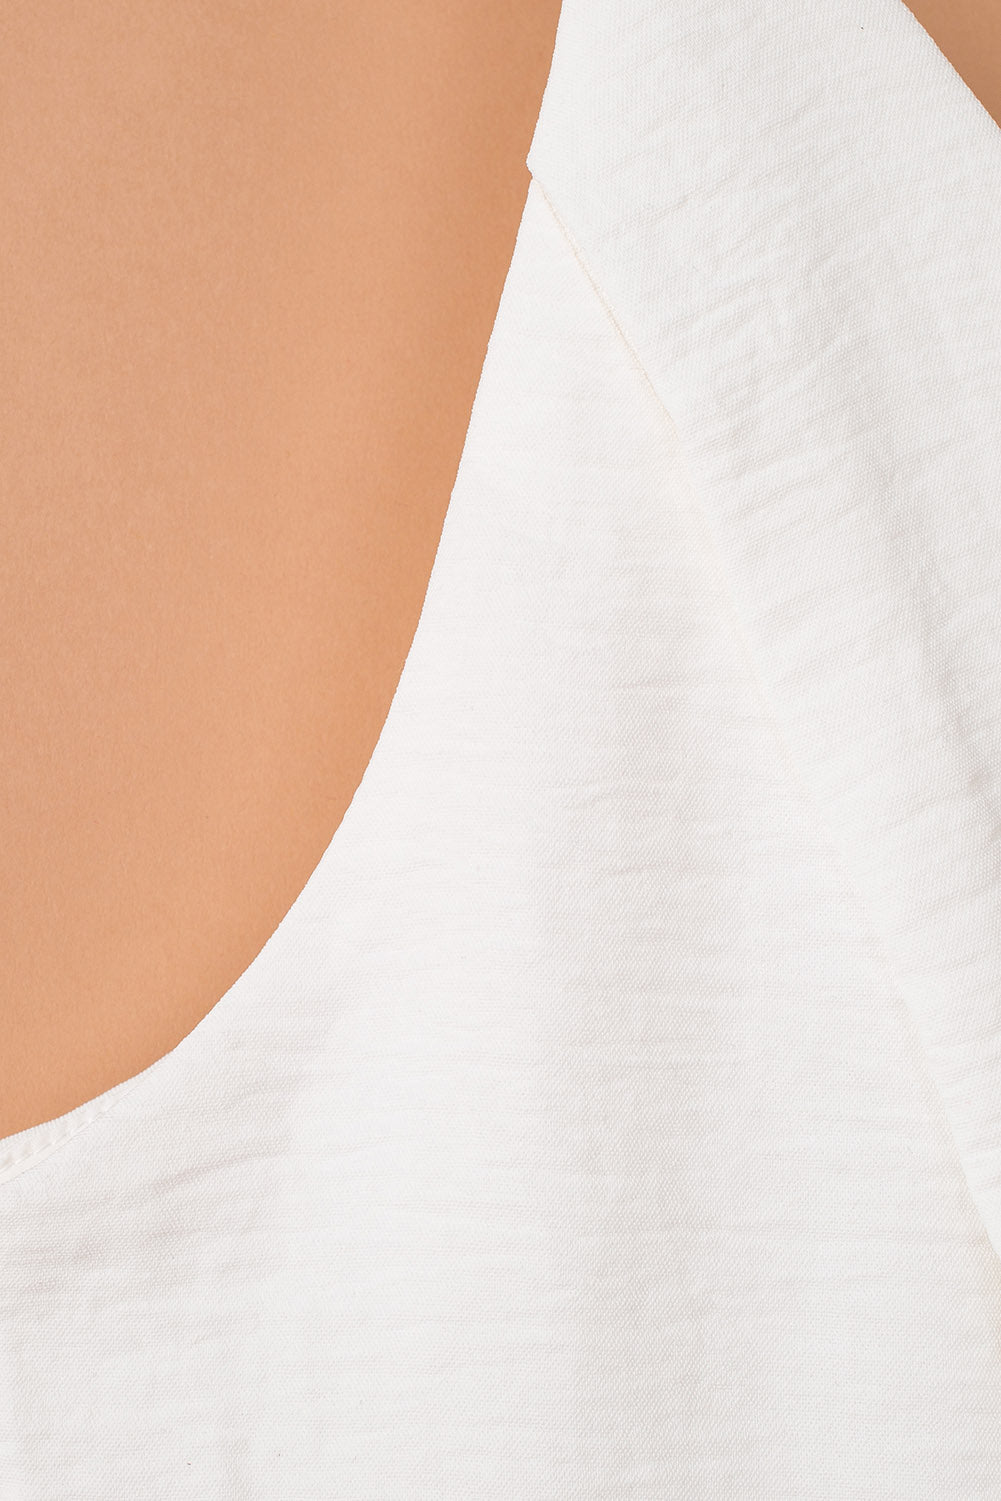 ΑΜΕΣΑ ΔΙΑΘΕΣΙΜΟ: άσπρη αμάνικη ολόσωμη φόρμα JAUNITA